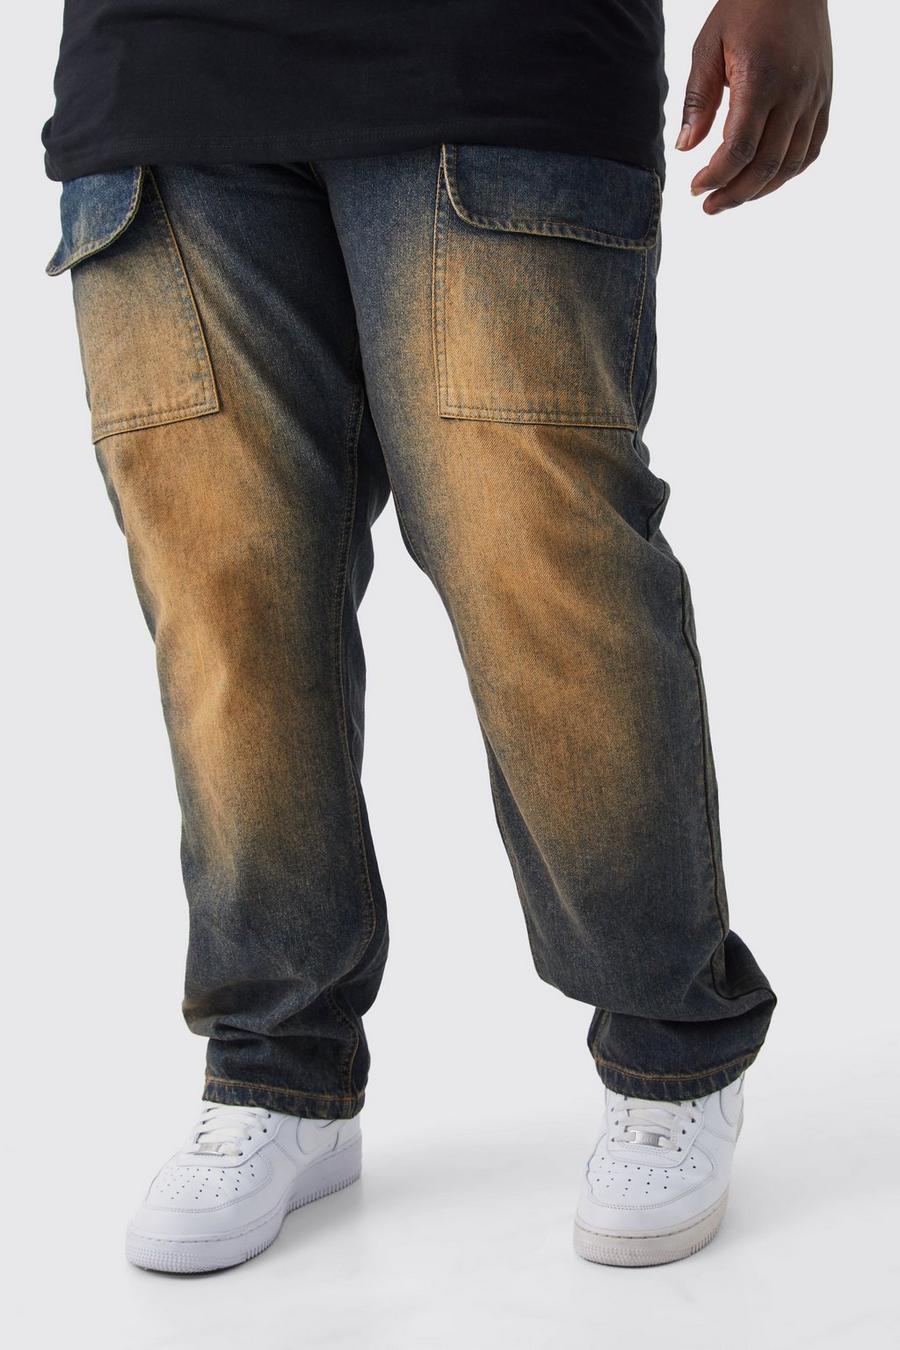 Jeans Cargo Plus Size dritti in denim rigido colorato con strappi, Antique wash image number 1